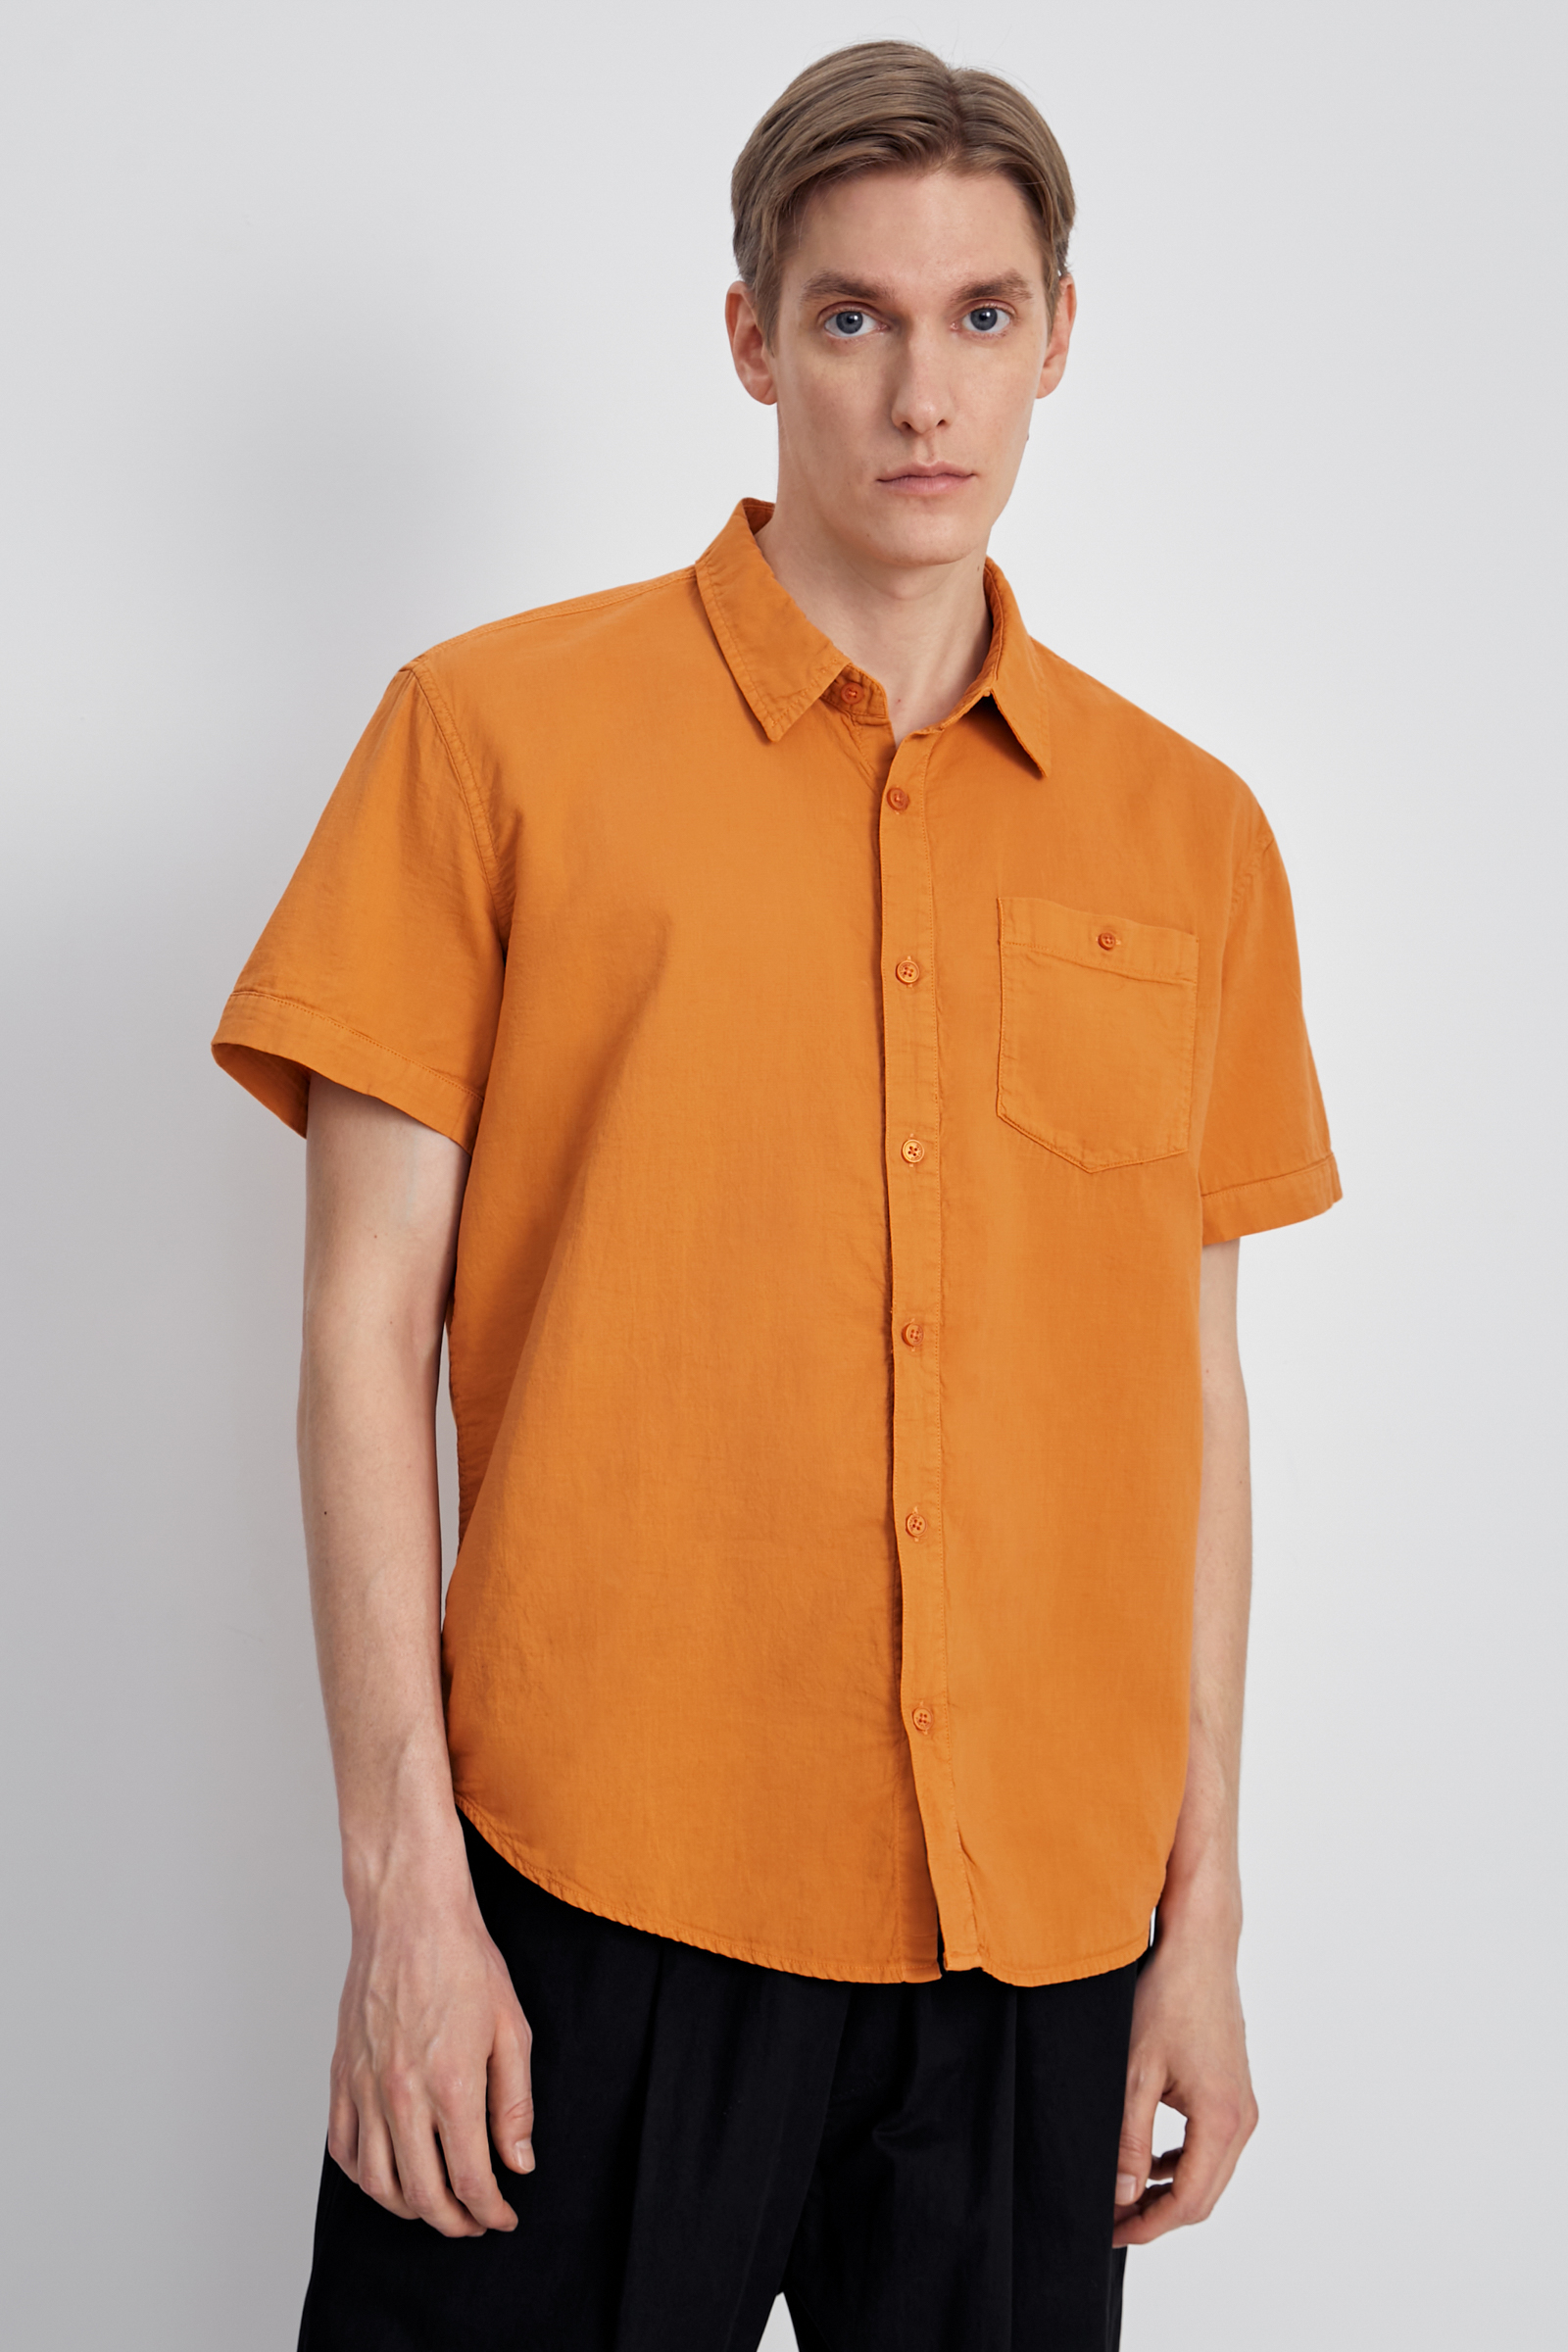 Рубашка мужская Finn Flare FSC21027 оранжевая S